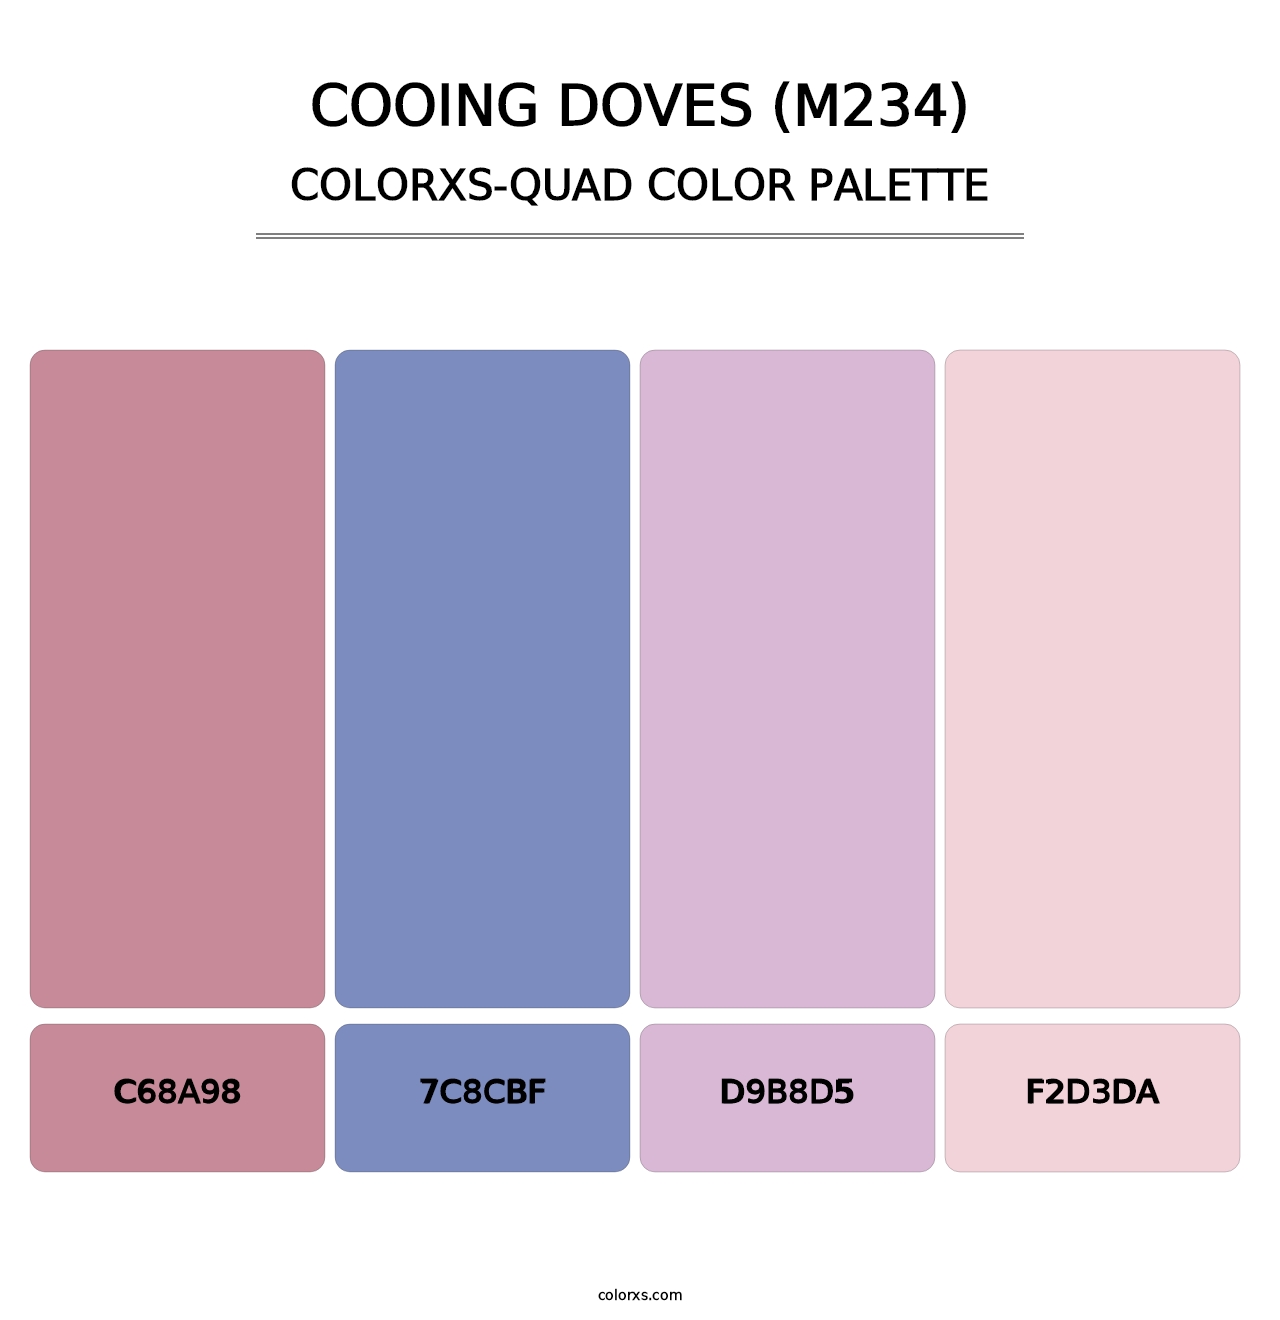 Cooing Doves (M234) - Colorxs Quad Palette